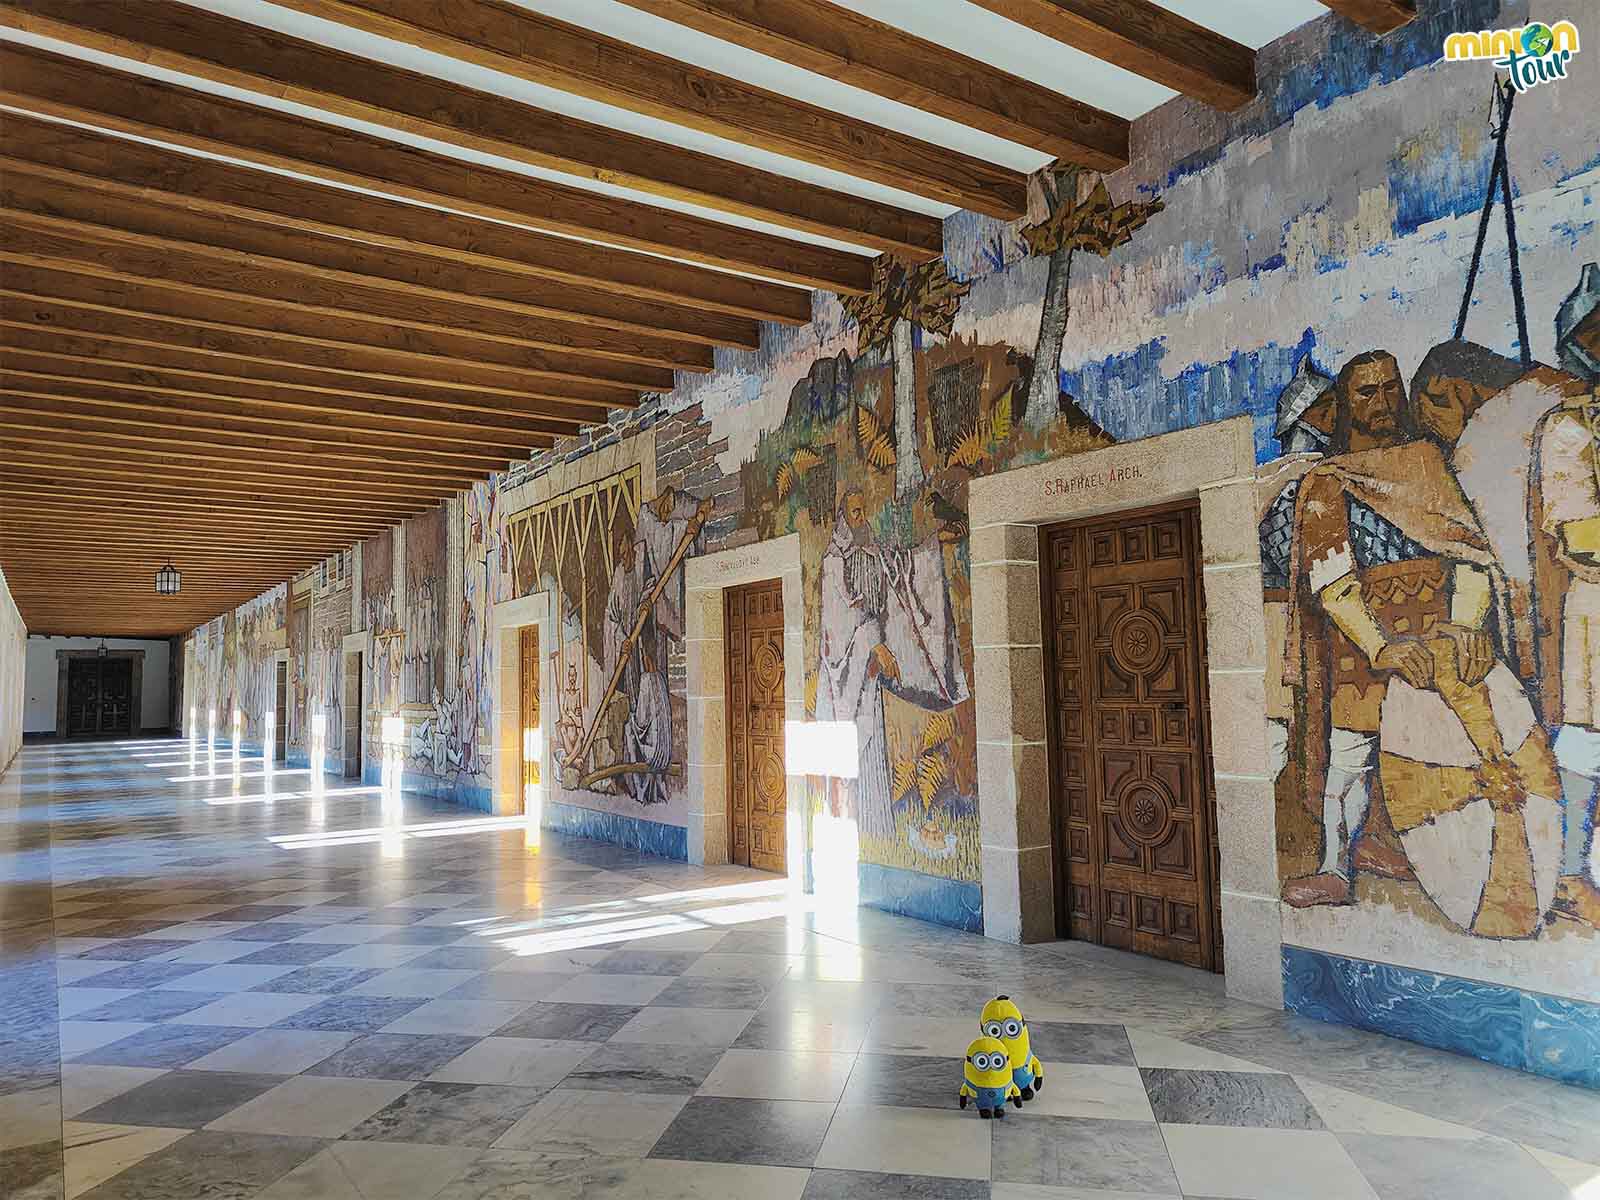 Las pinturas murales del Monasterio de Samos son una pasada